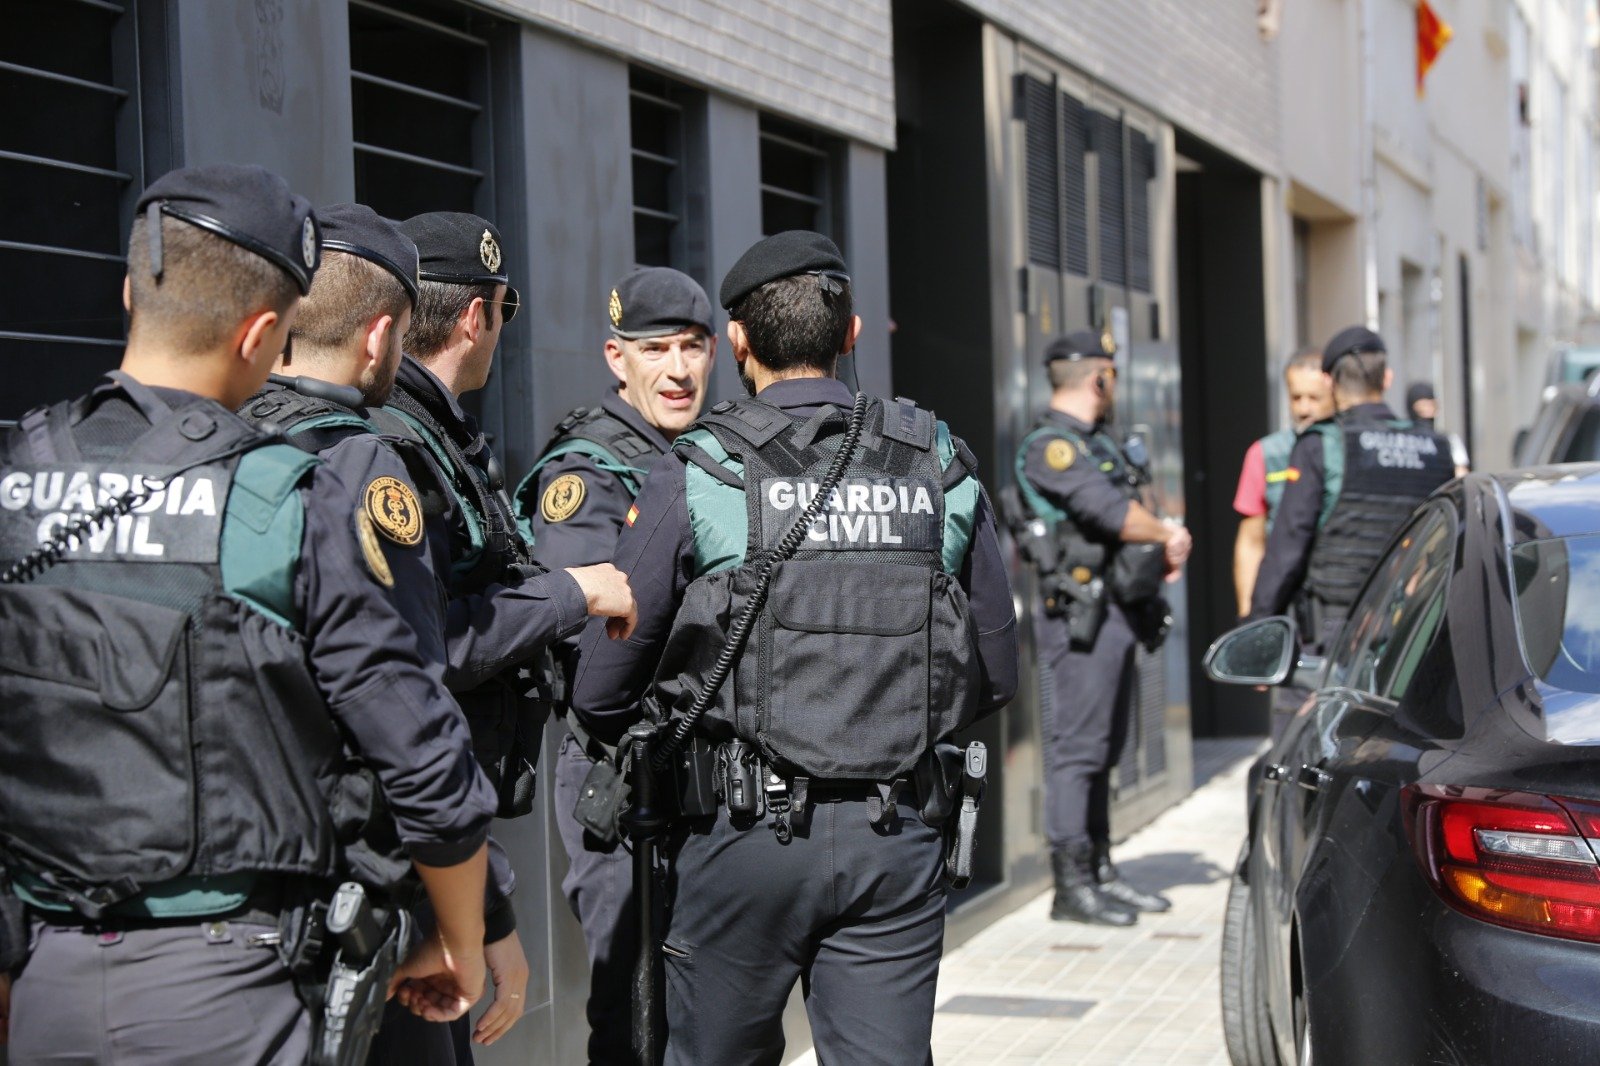 La Guardia Civil empieza a trasladar a Madrid a los CDR detenidos